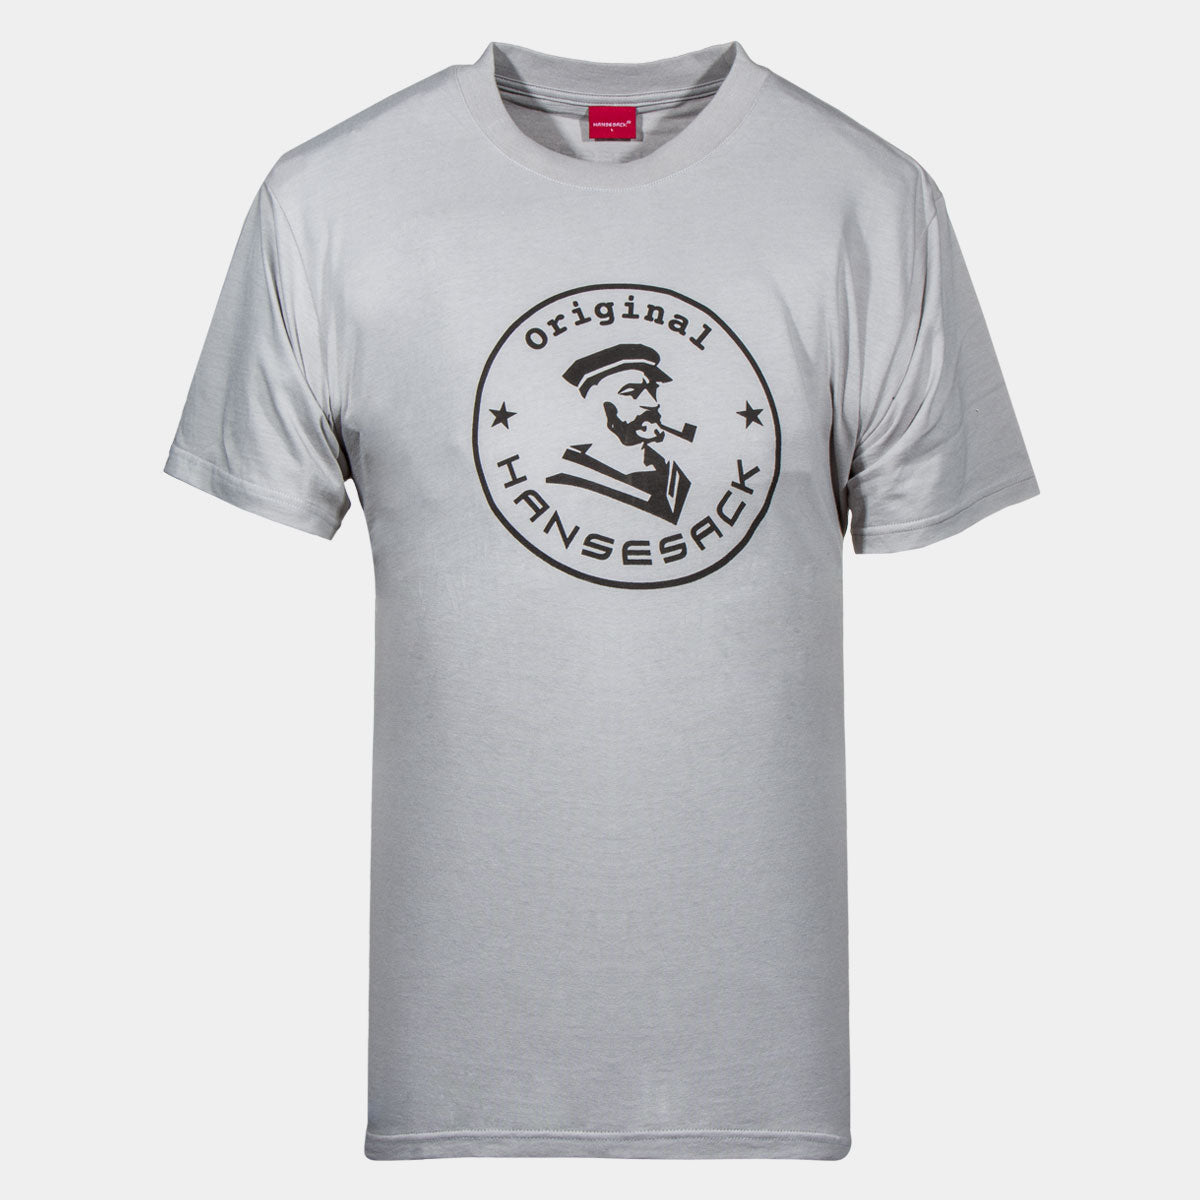 Hansesack Produktbild graues T-Shirt mit weißem großem Original Hansesack Aufdruck von vorne